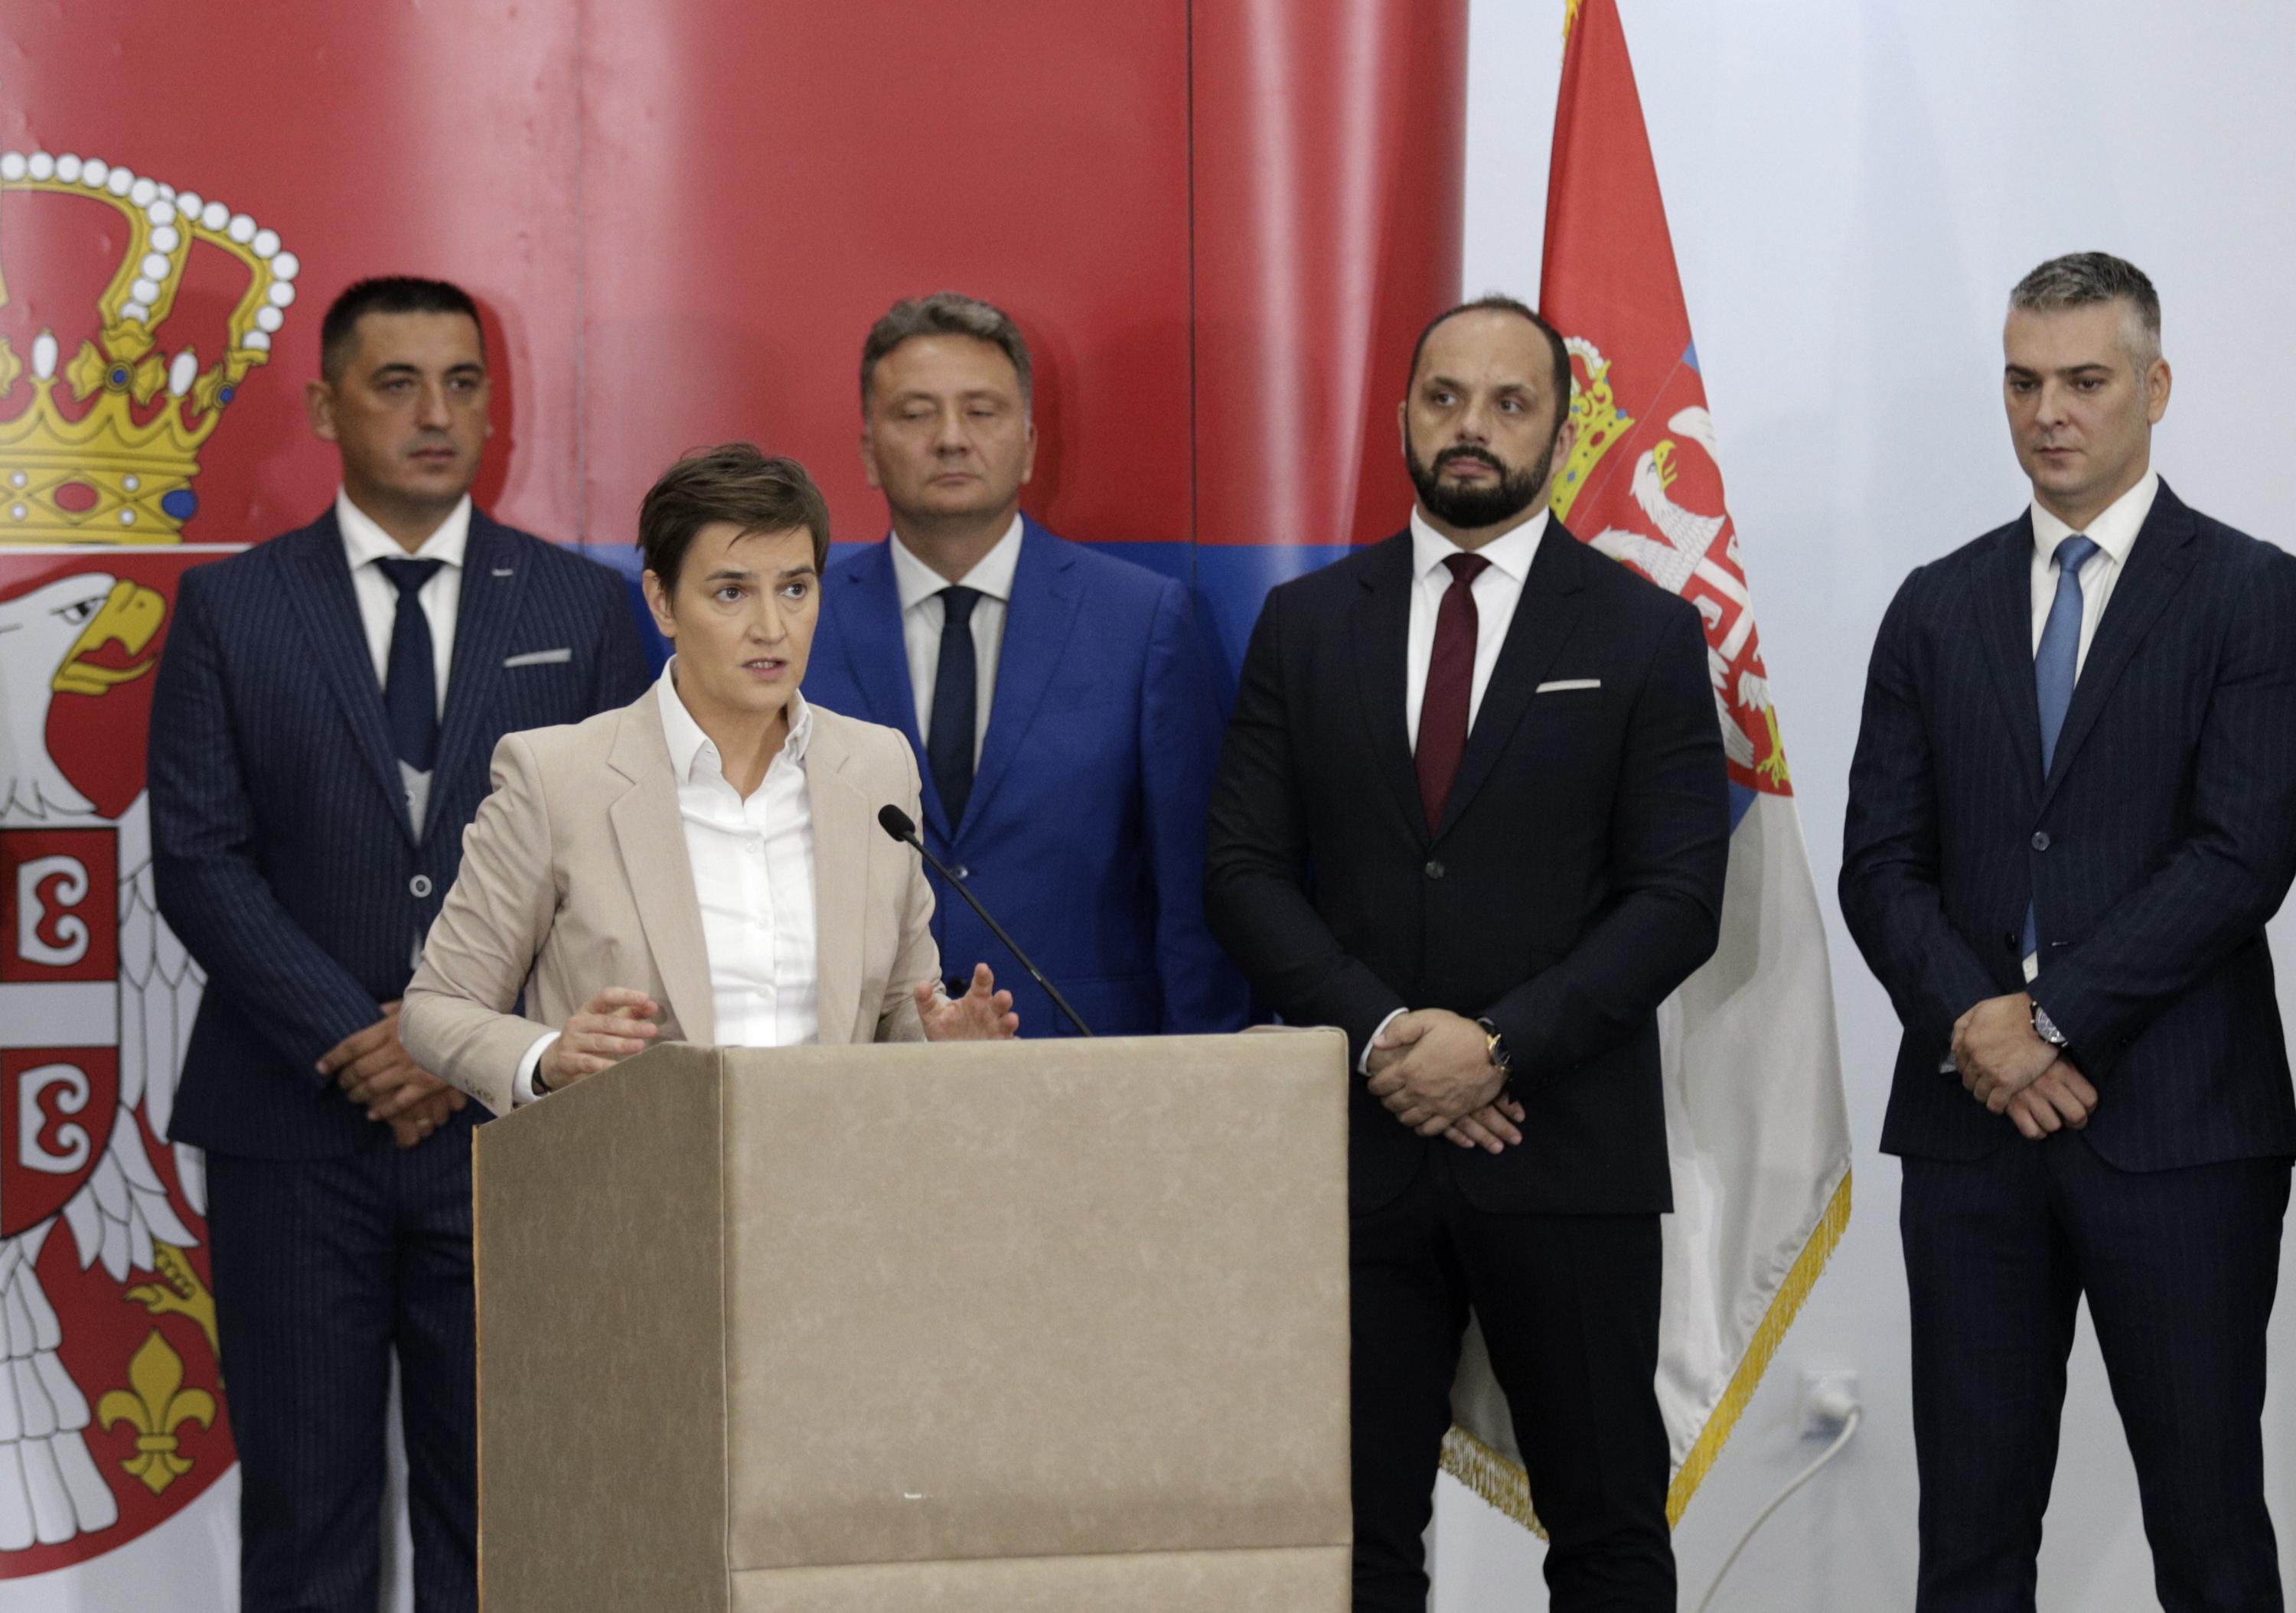 Српски премијер долази у посету док тензије и даље расту за косовске Србе